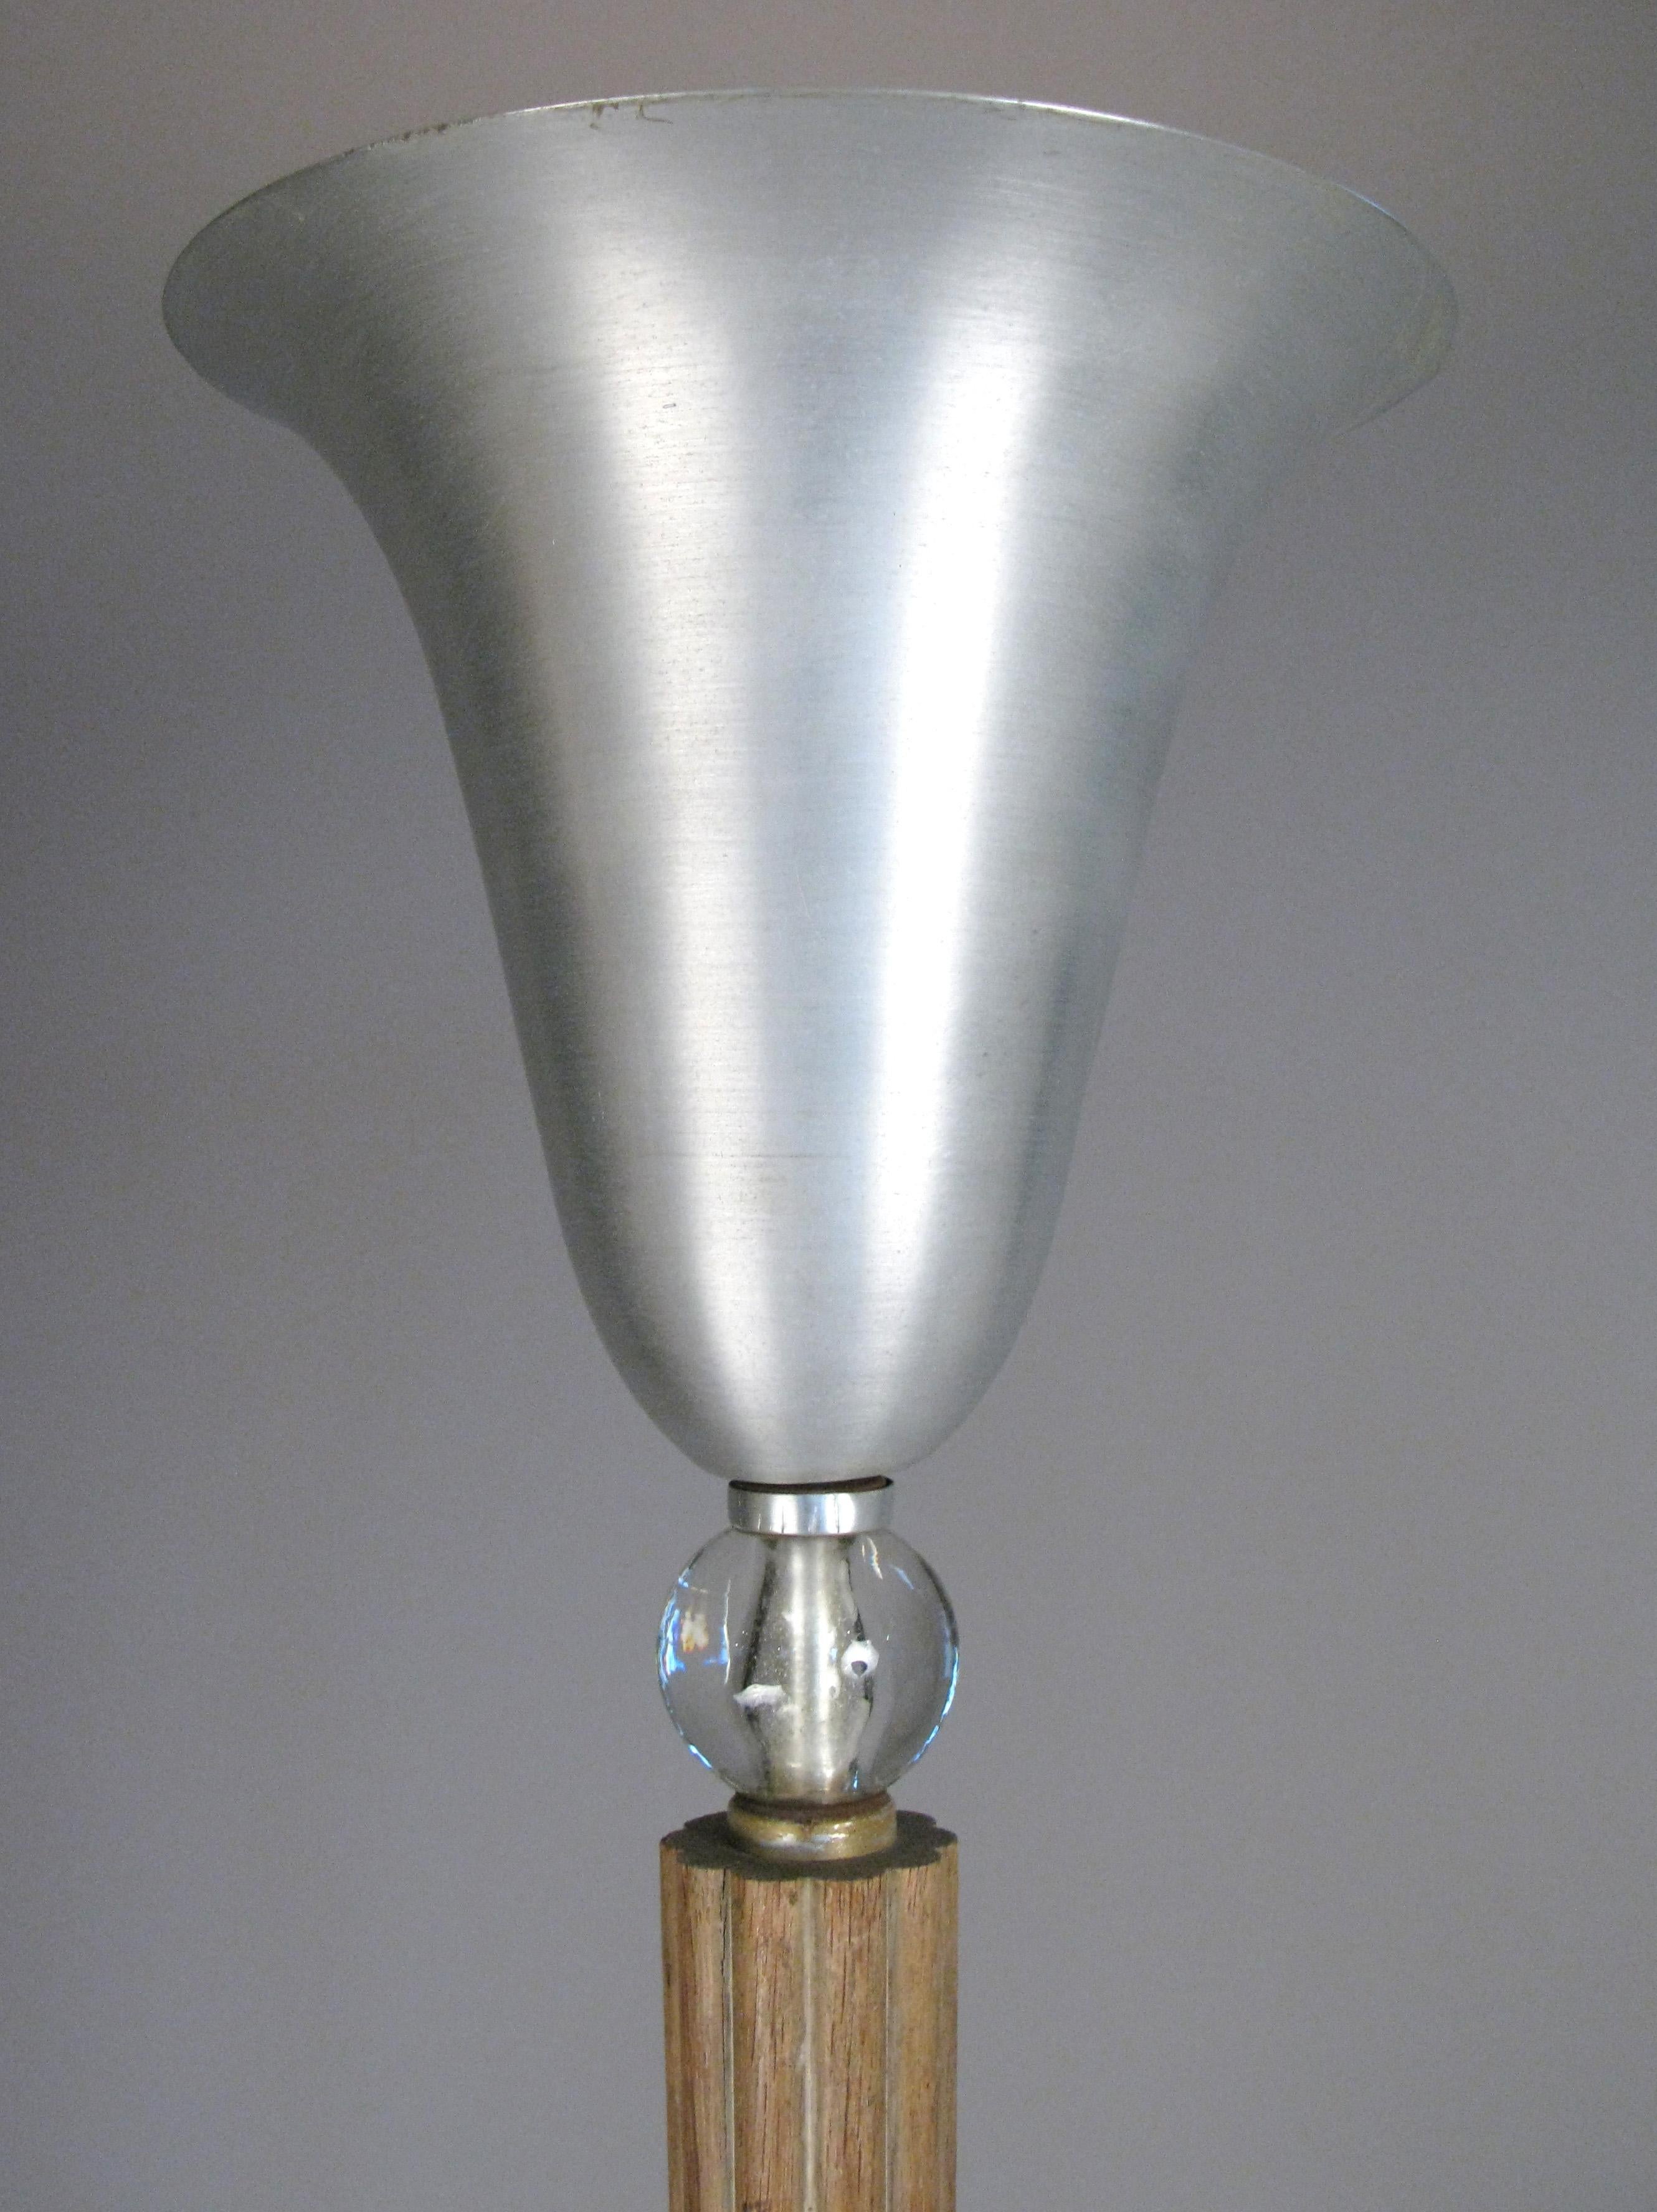 Eine seltene Stehlampe aus den 1940er Jahren:: entworfen von Russell Wright:: mit einem gekerbten Eichenstamm:: Glaskugeldetail und gebürstetem Aluminium mit ausgestellter Spitze. Schönes und klassisches Design.